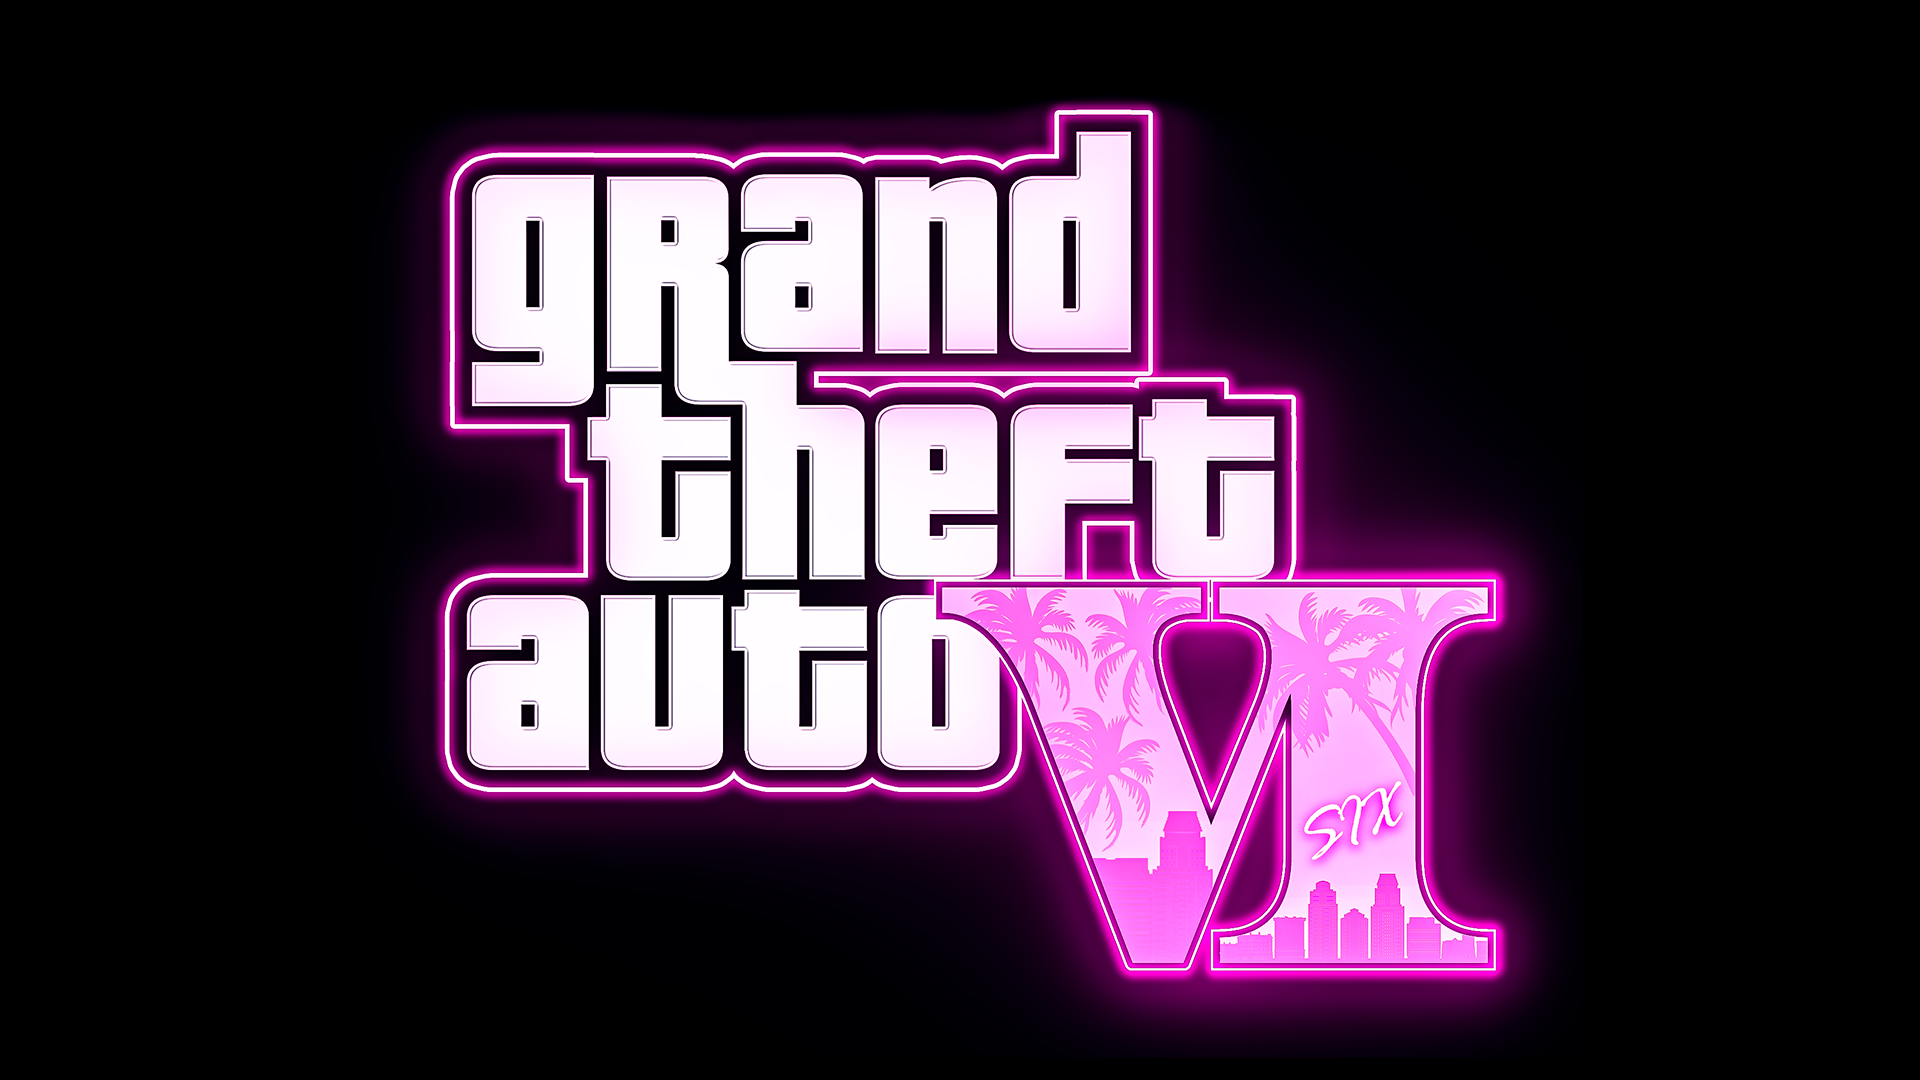 Grand Theft Auto V (Legendado) (PC) 【Longplay】 